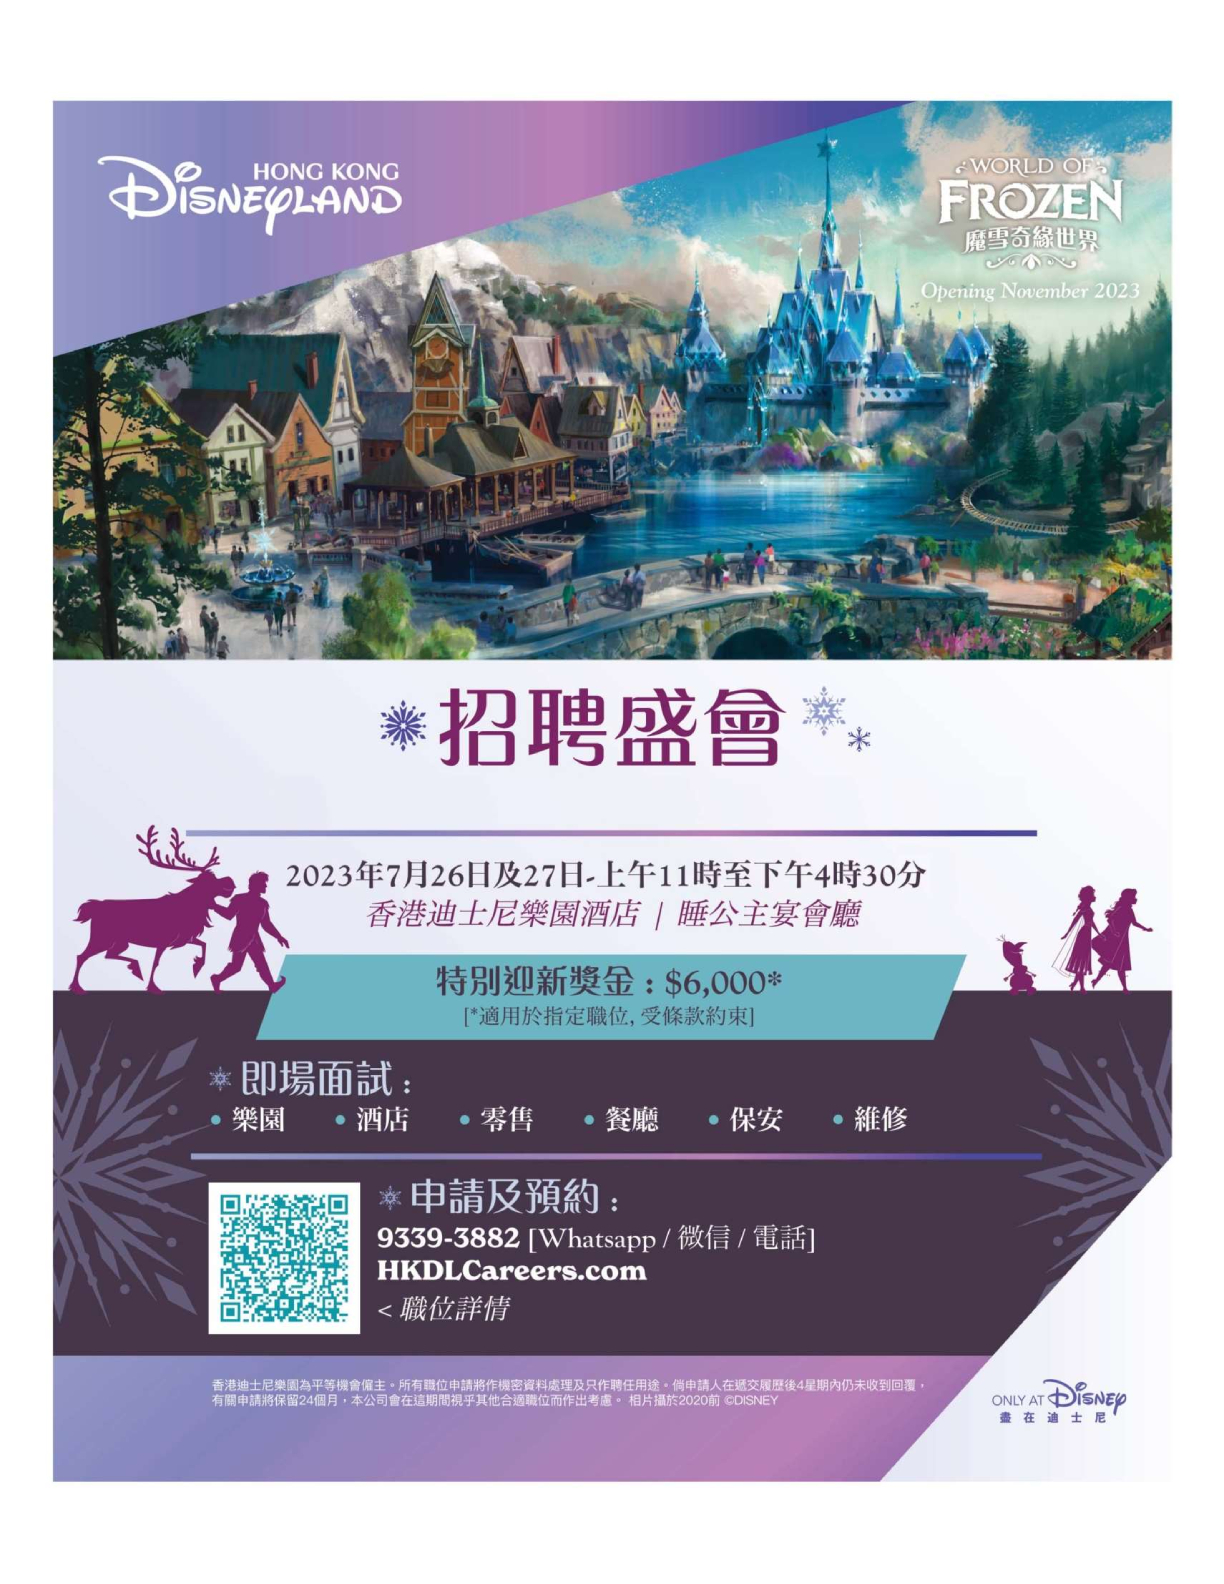 香港迪士尼樂園: 招聘盛會